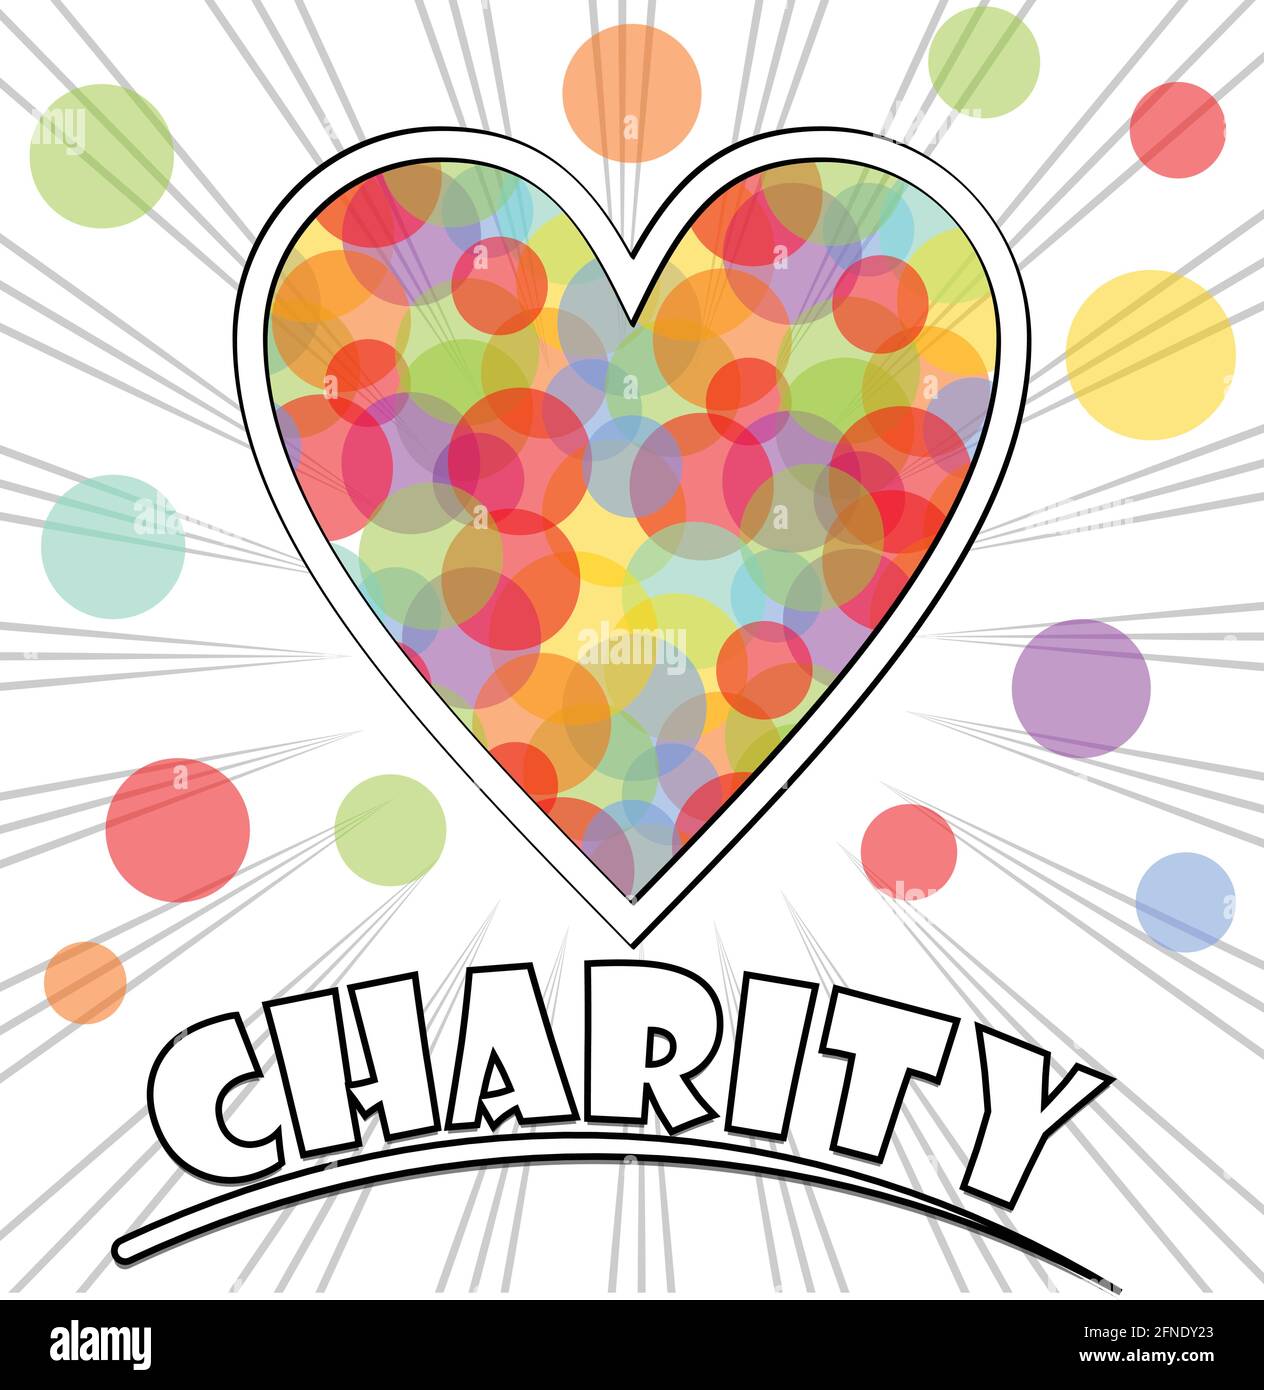 Affiche pour un événement caritatif avec forme de coeur remplie de cercles de couleur pastel. Arrière-plan avec des rayons et l'inscription de charité. Illustration de Vecteur